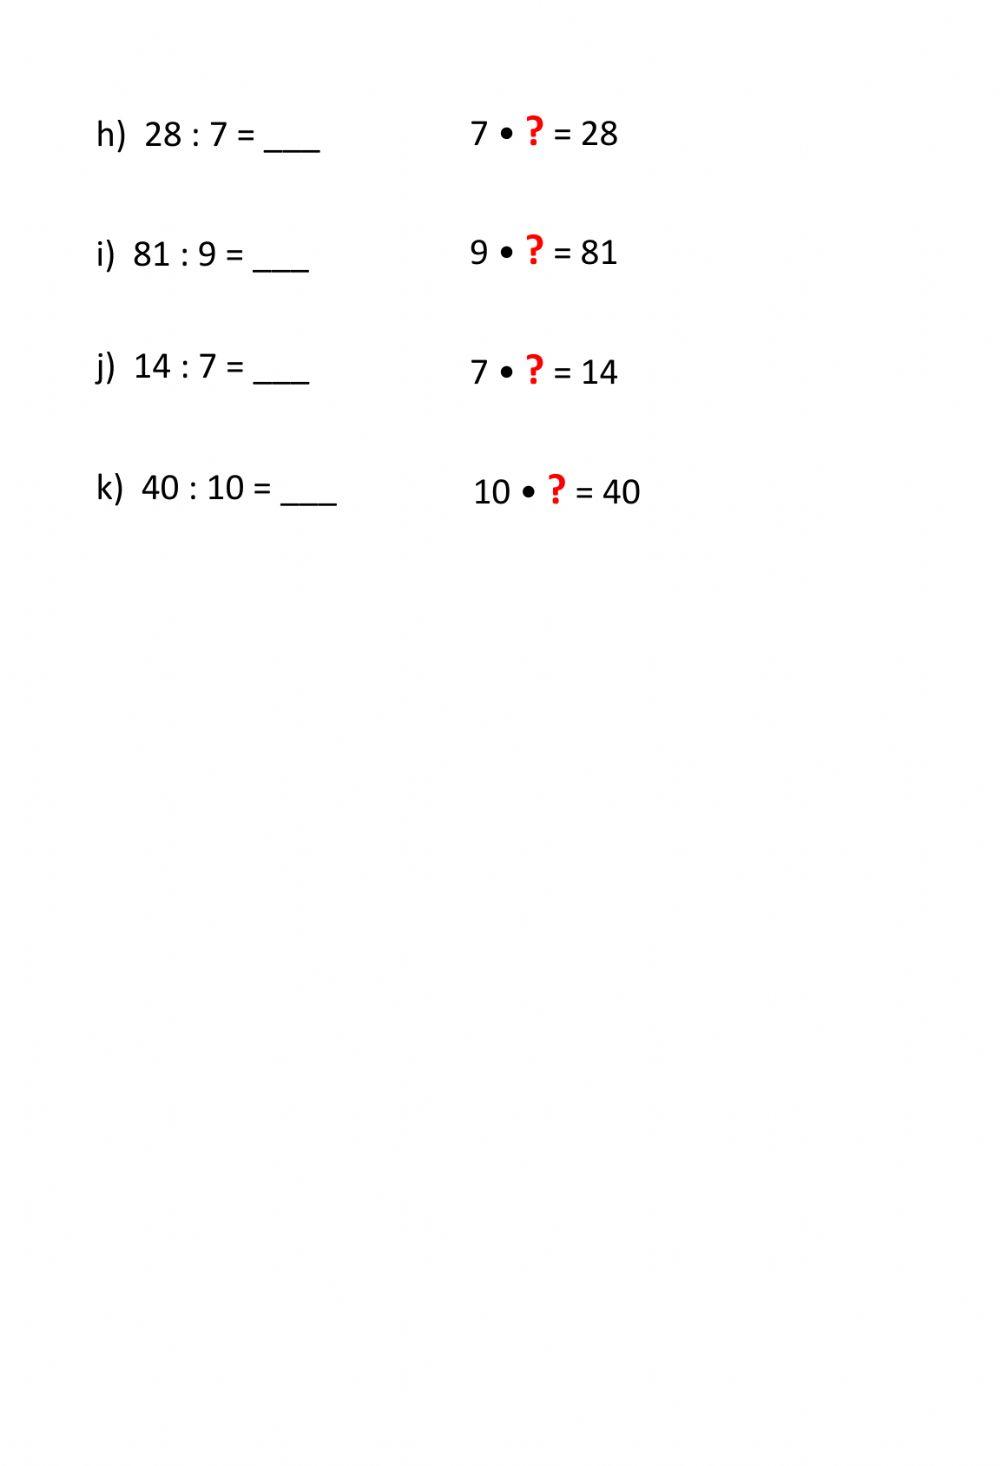 Ficha divisiones para resolver con multiplicaciones